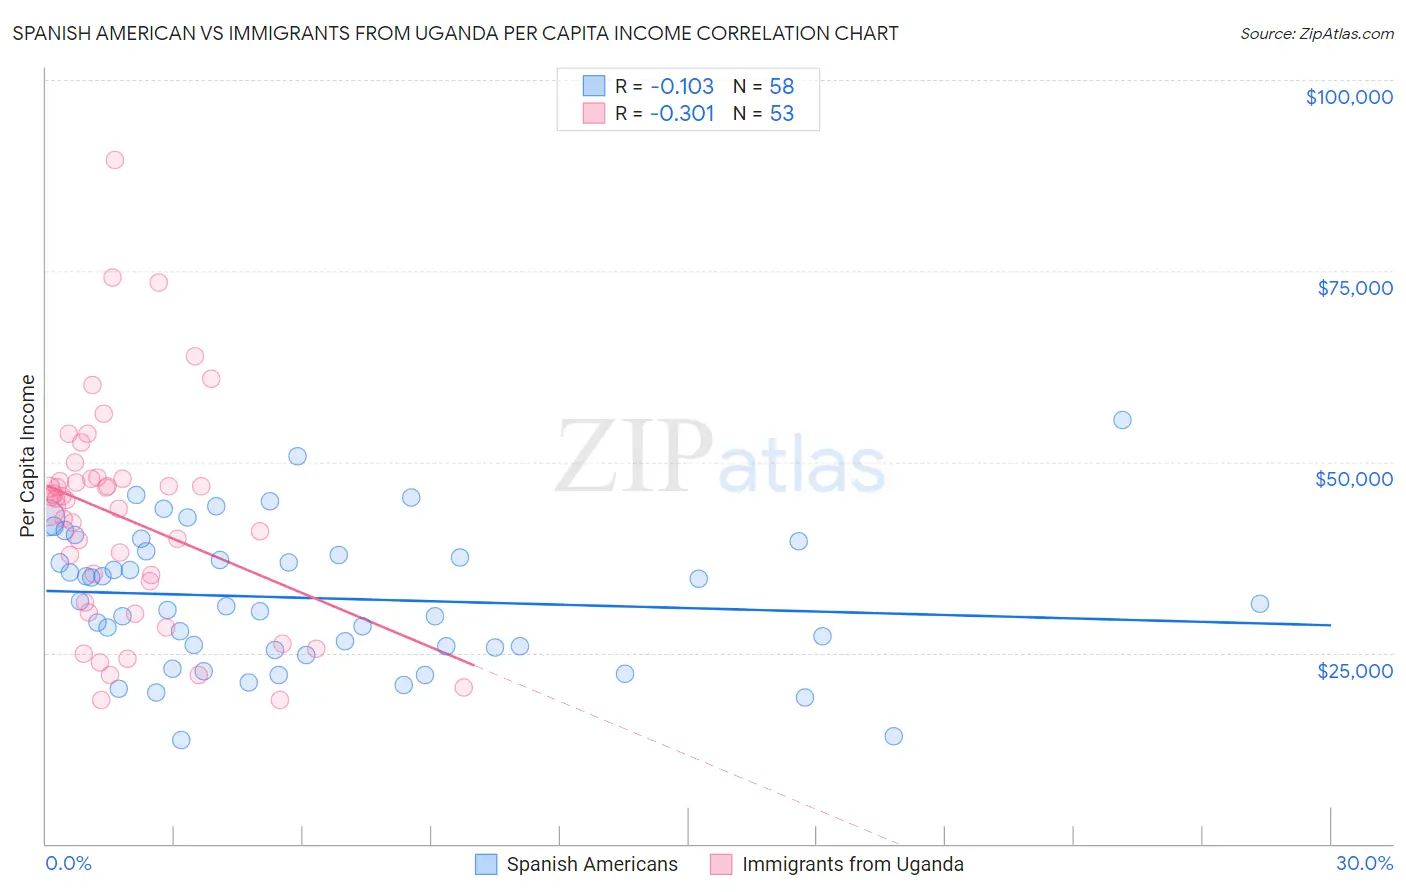 Spanish American vs Immigrants from Uganda Per Capita Income